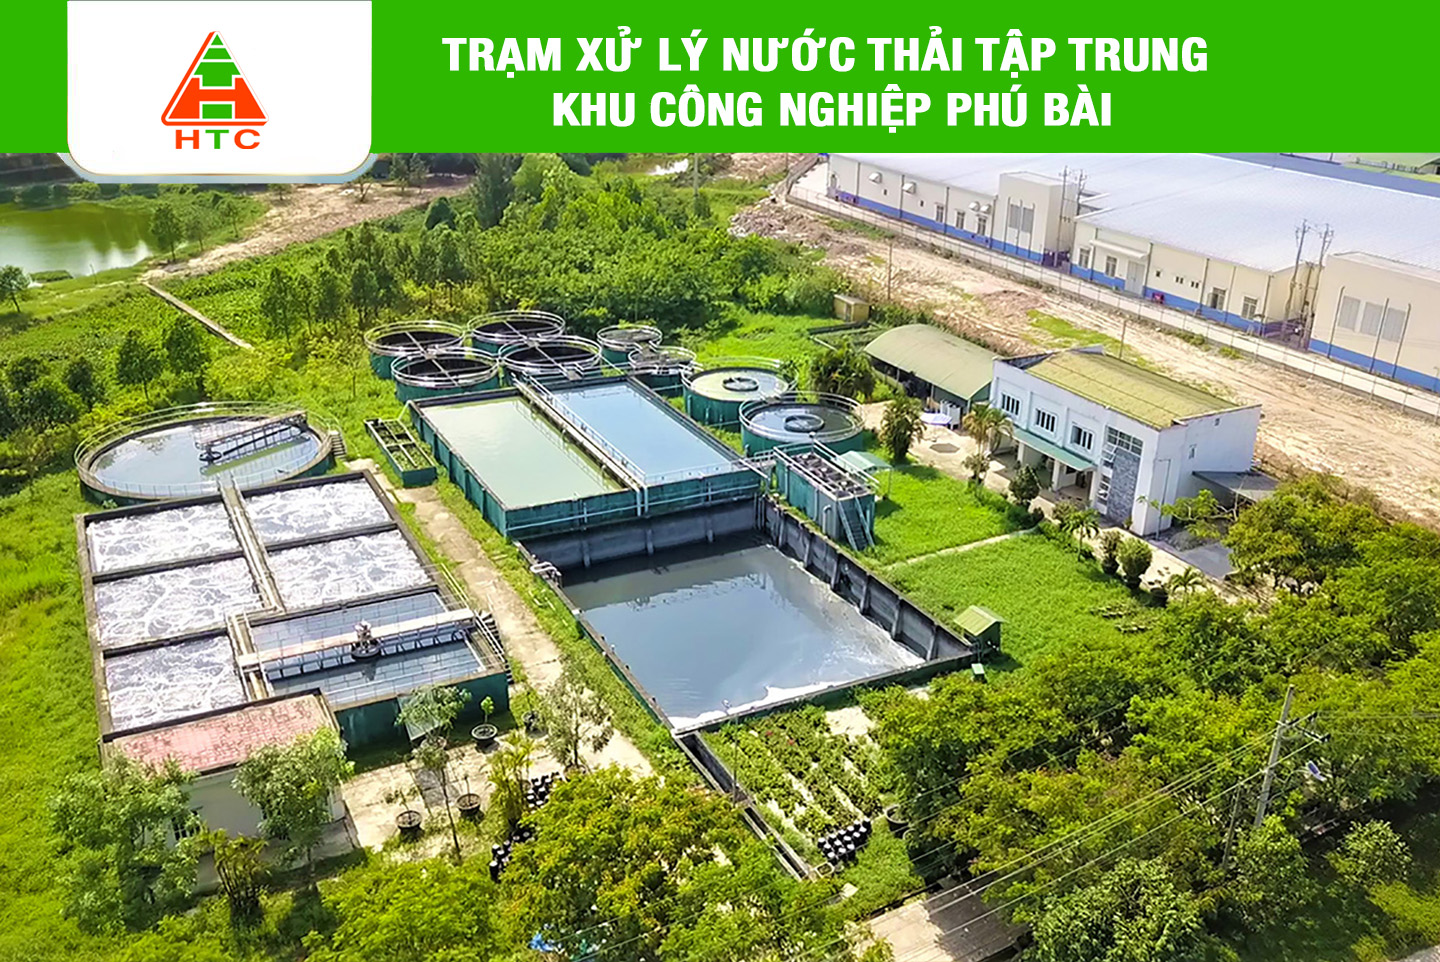 Bạn có biết: Khu công nghiệp đầu tiên đầu tư hệ thống xử lý nước thải tập trung tại tỉnh Thừa Thiên Huế